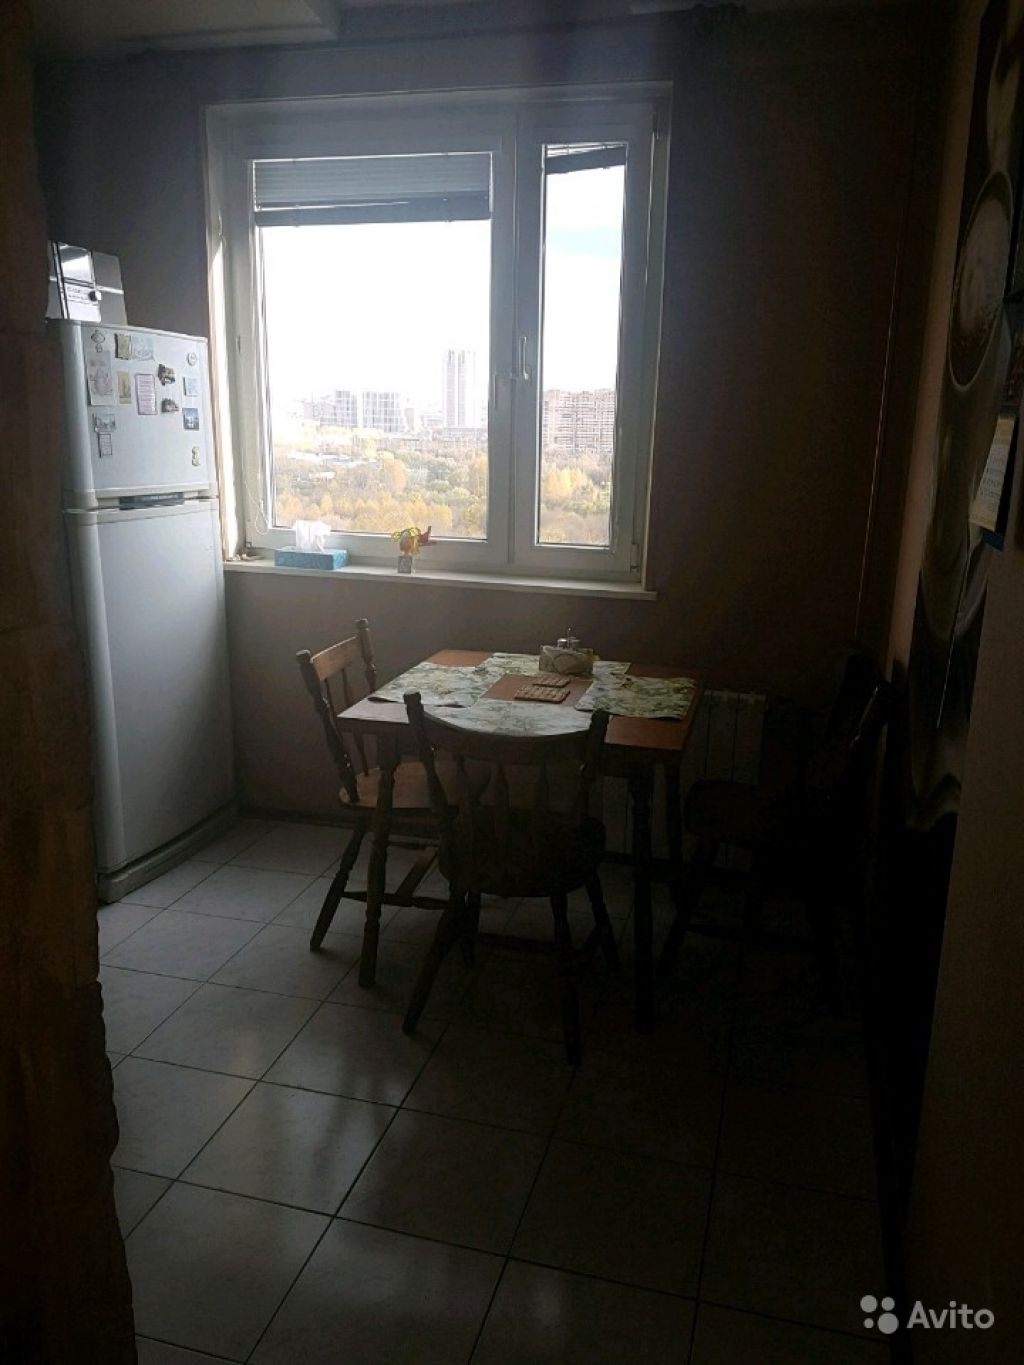 Сдам квартиру 1-к квартира 35 м² на 14 этаже 17-этажного панельного дома в Москве. Фото 1